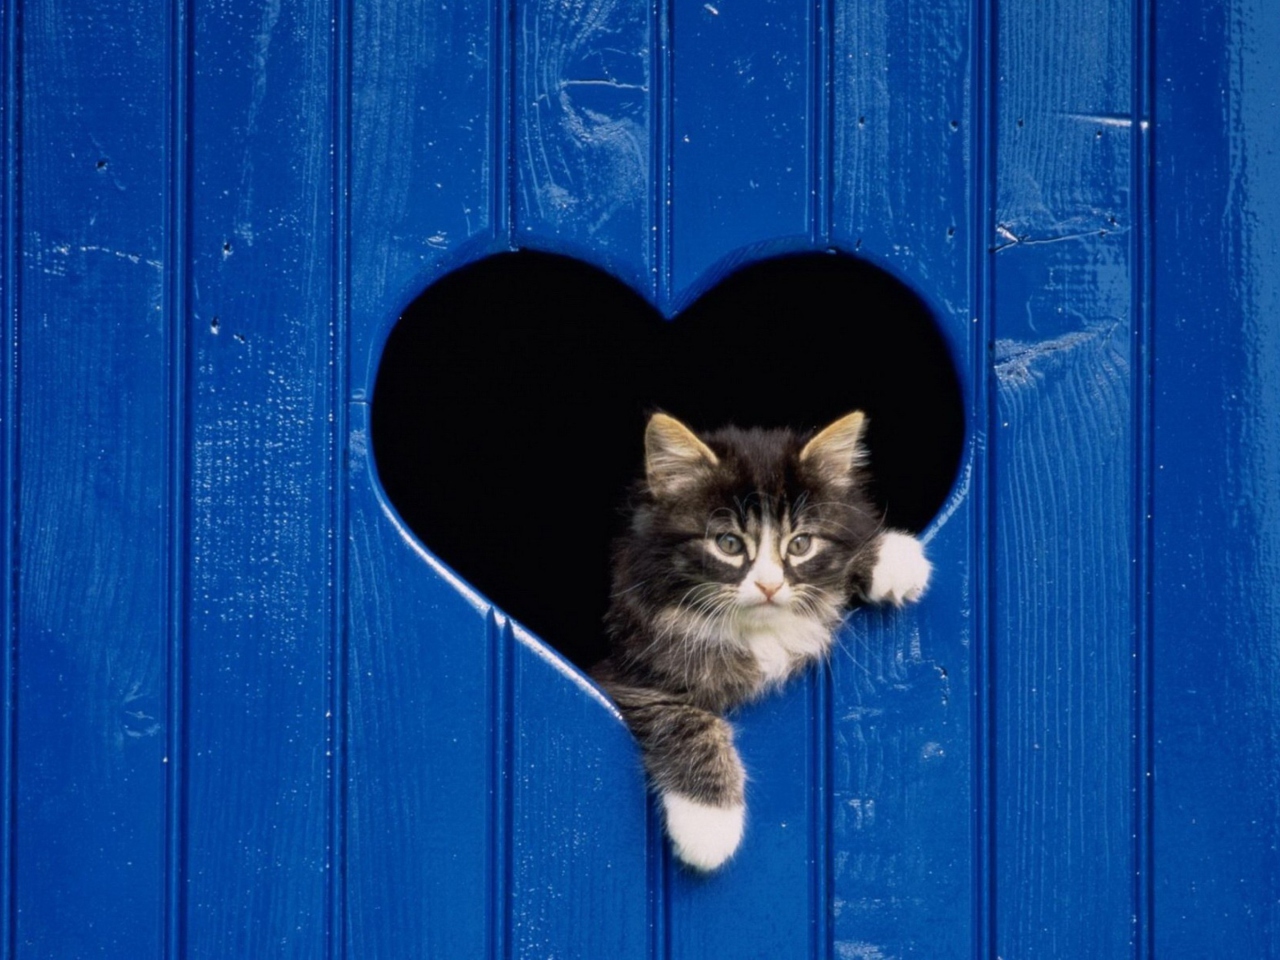 Das Cat In Heart-Shaped Window Wallpaper 1280x960